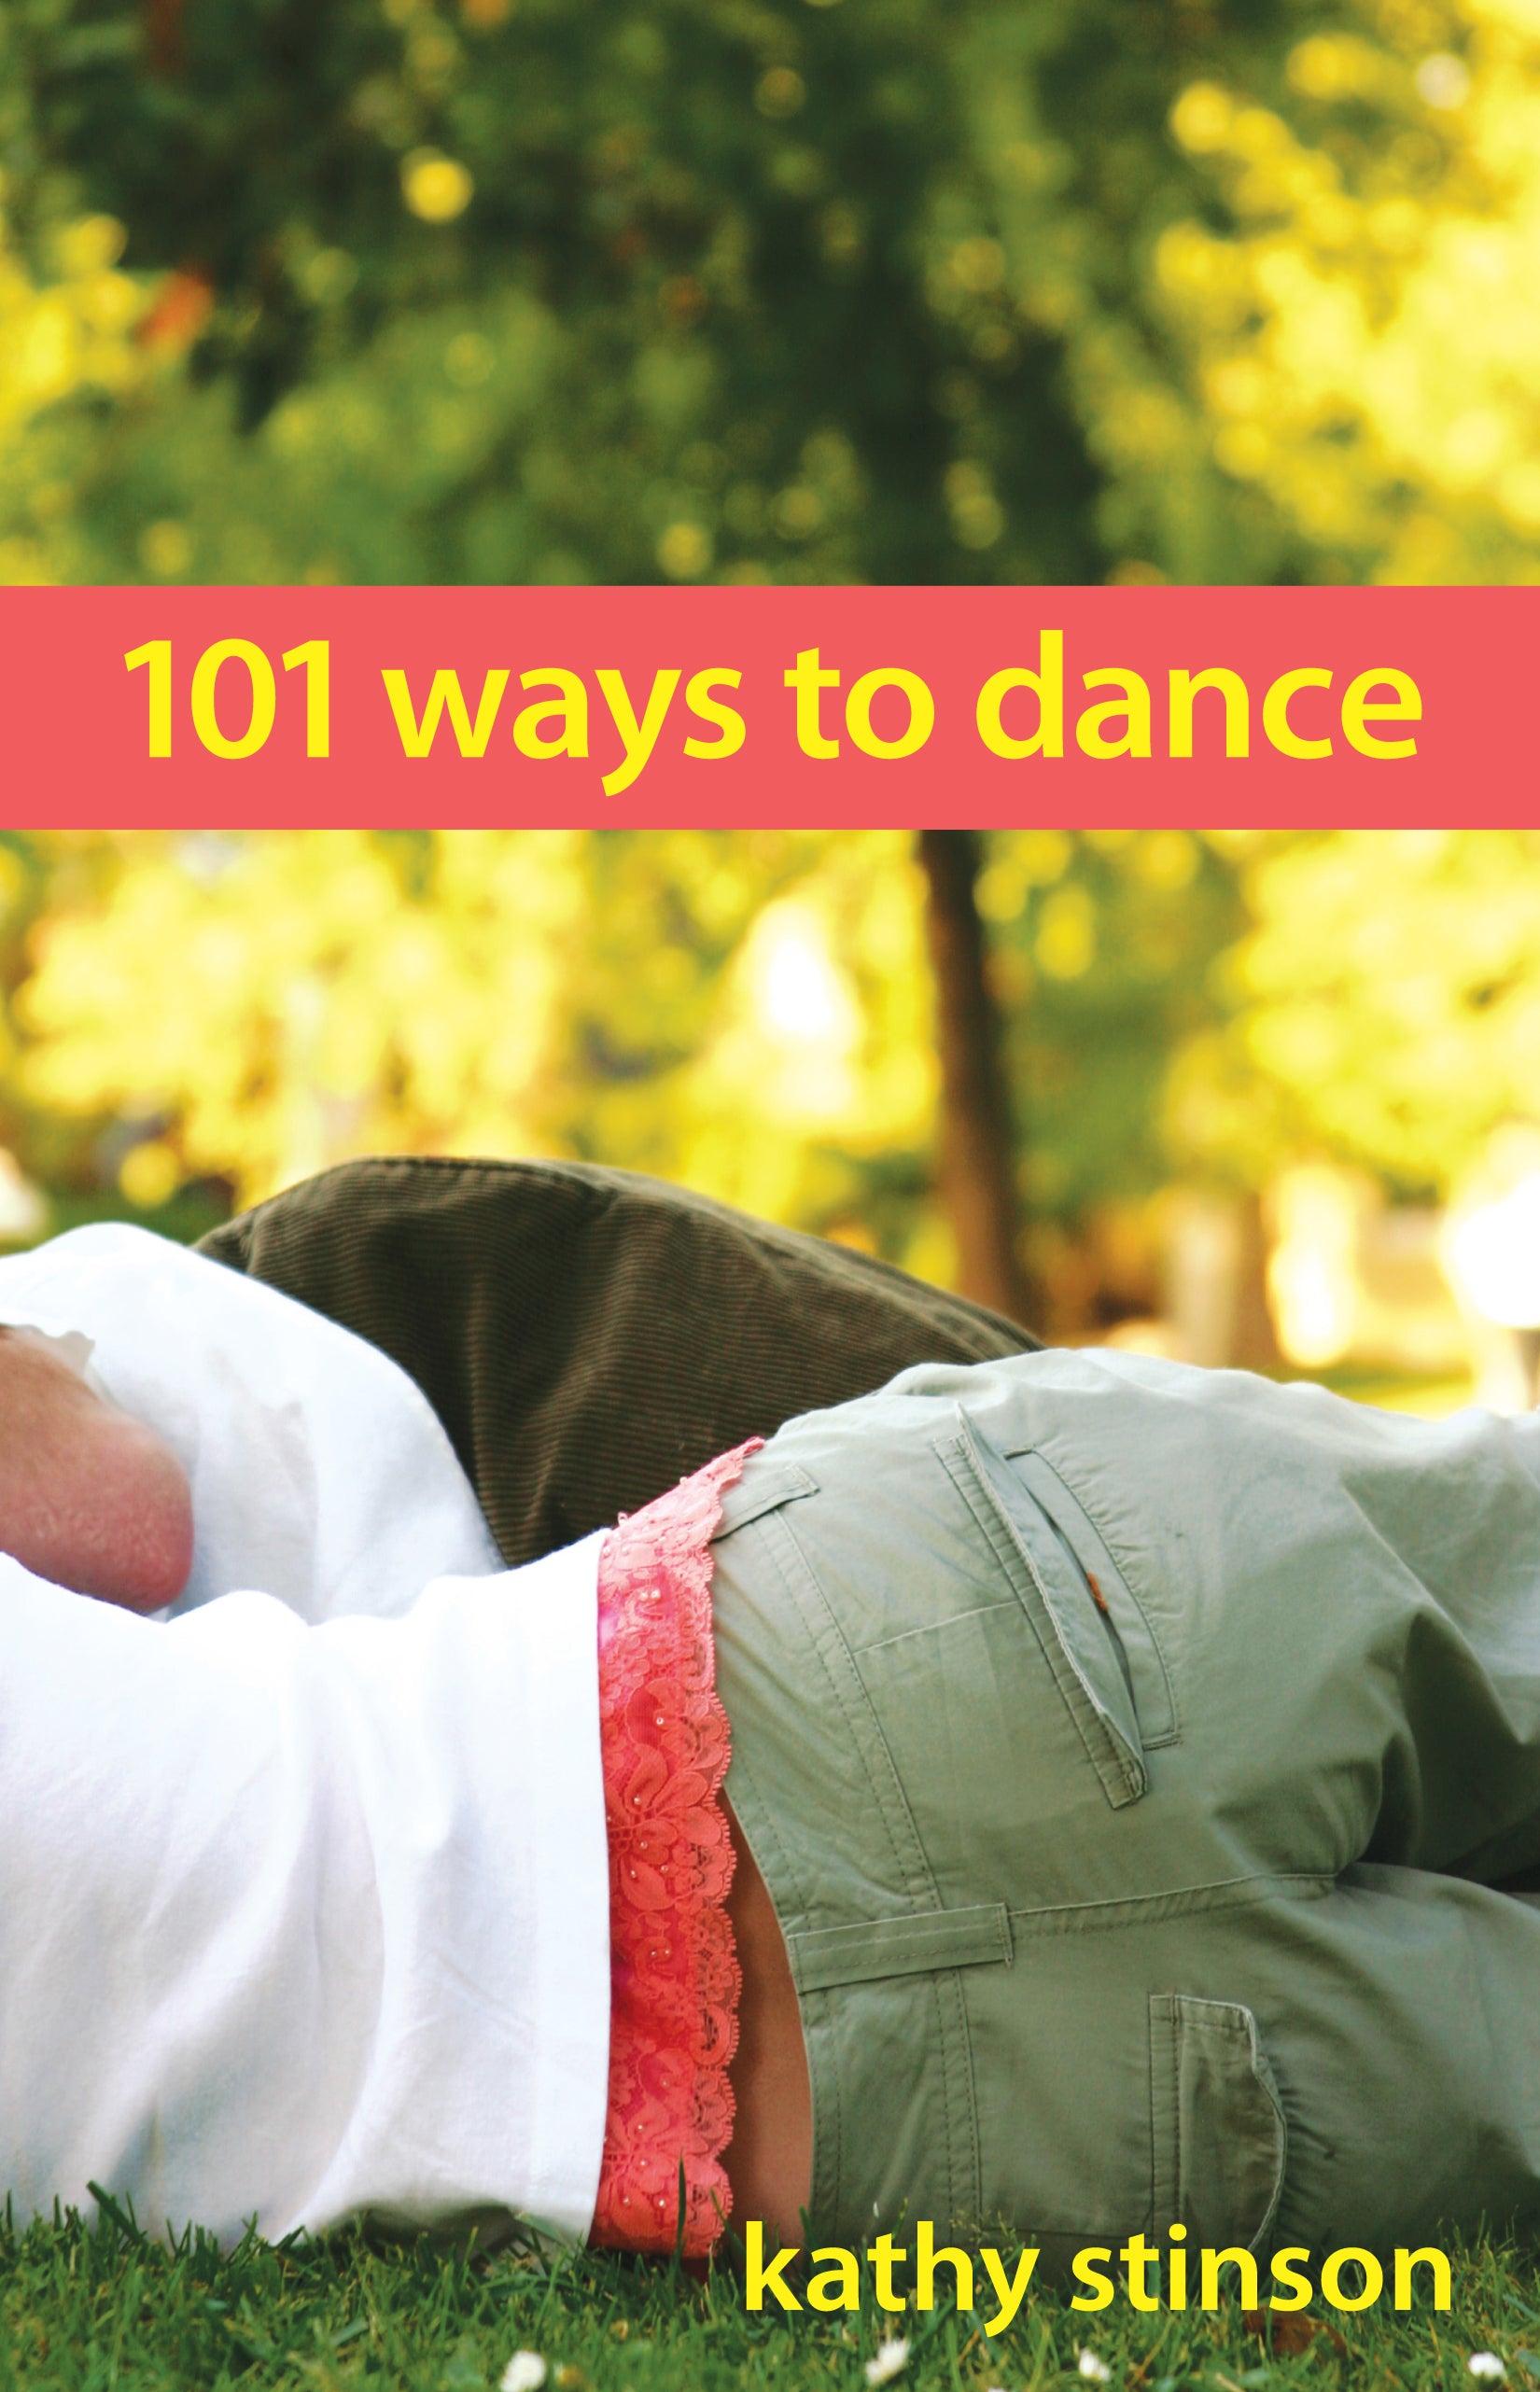 101 Ways to Dance-ebook